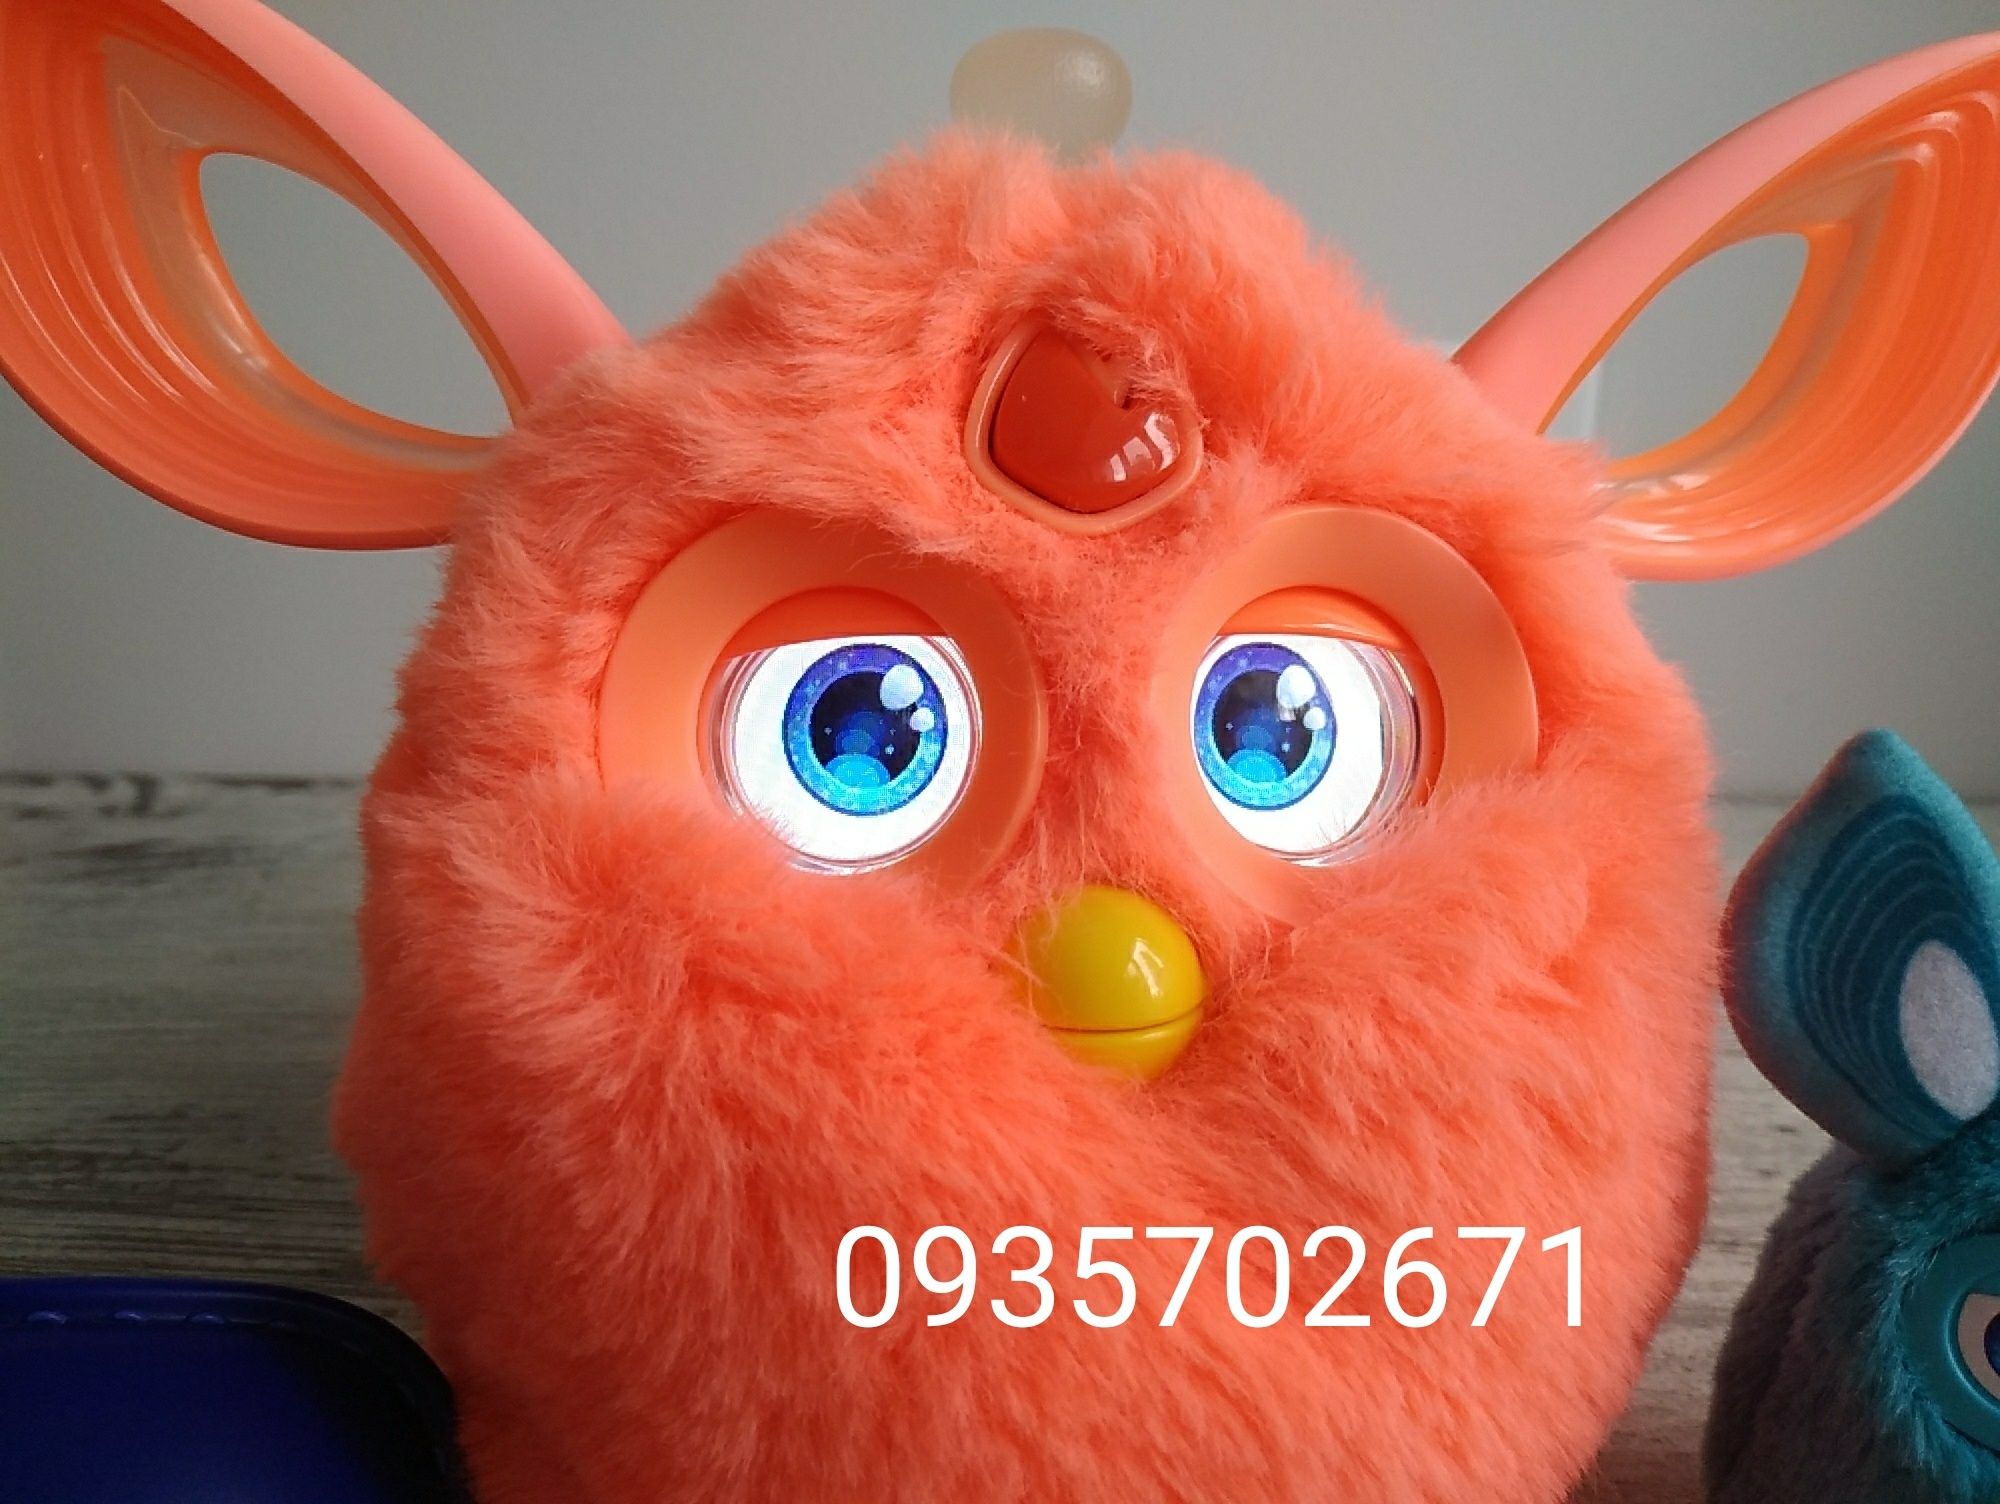 ОРИГИНАЛ Ферби Коннект Furby Connect Hasbro. Разные цвета в наличии